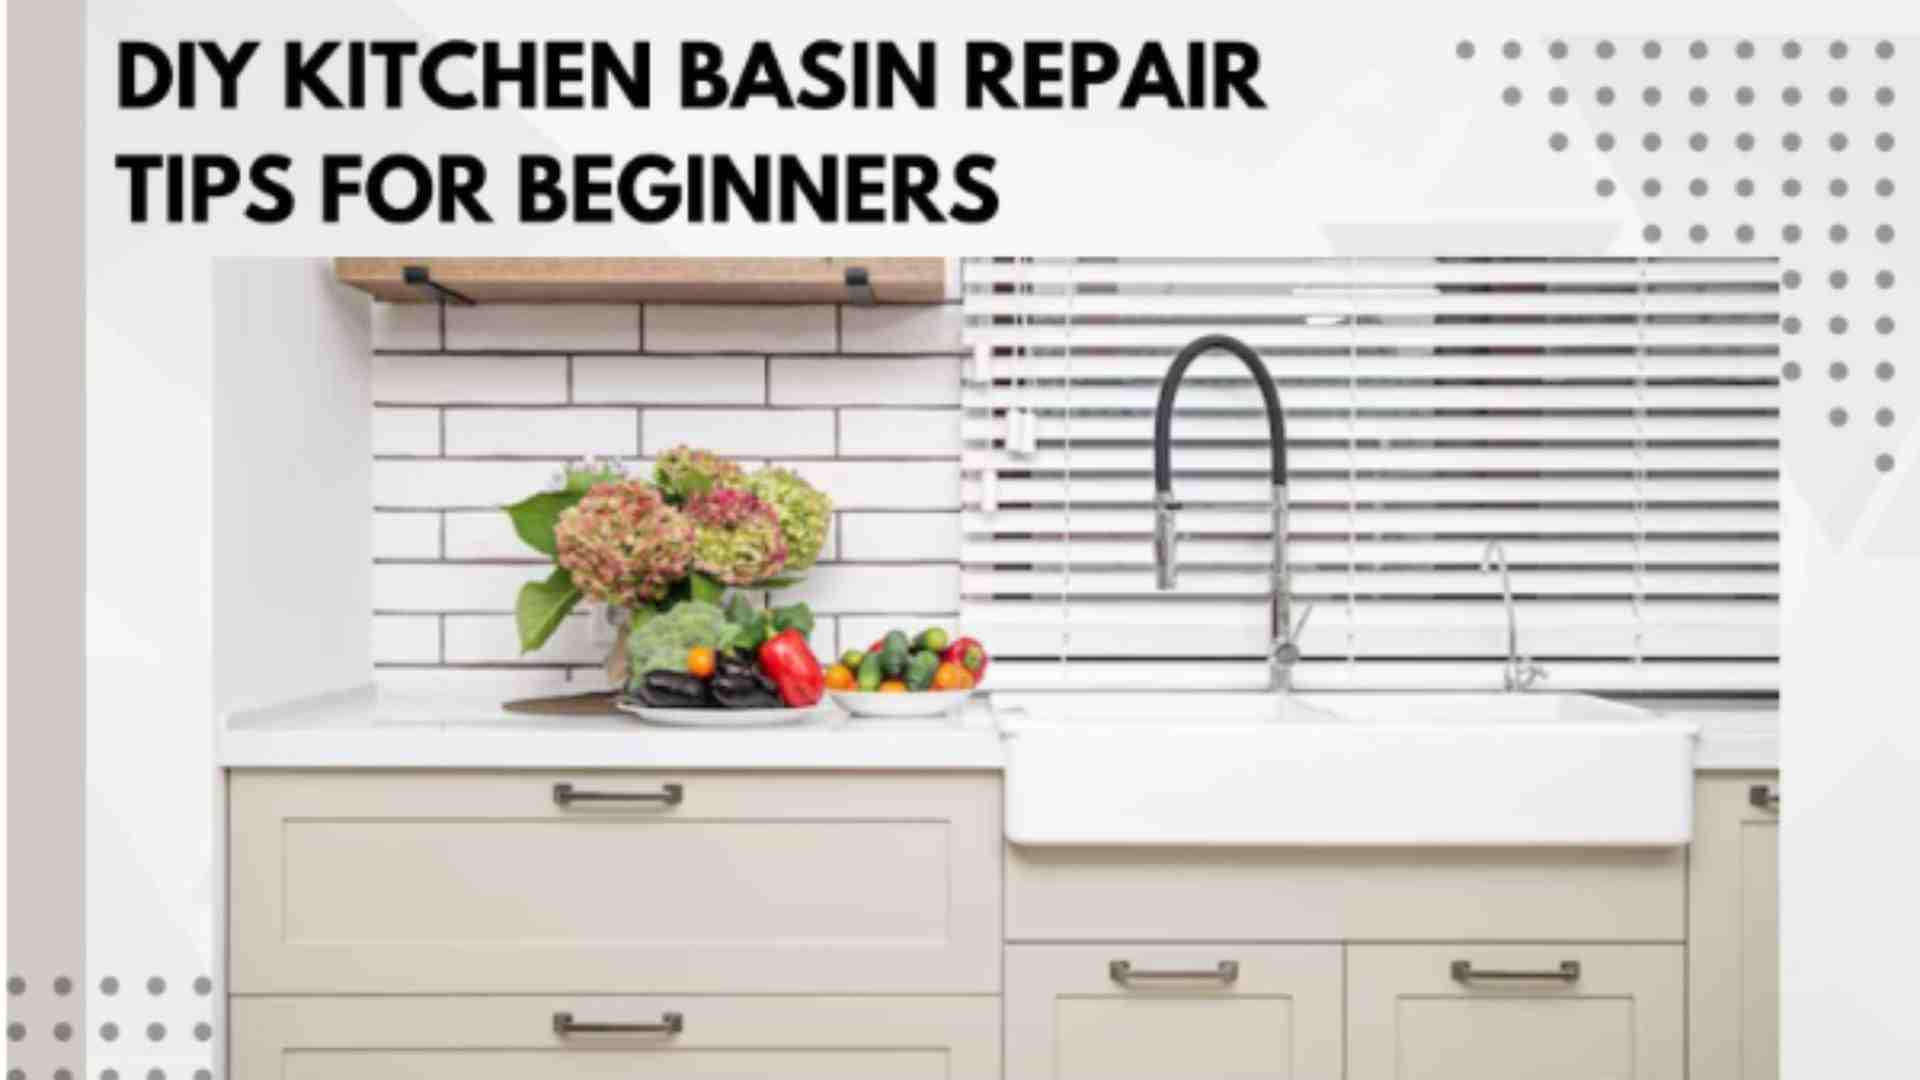 DIY Kitchen Basin Repair Tips for Beginners